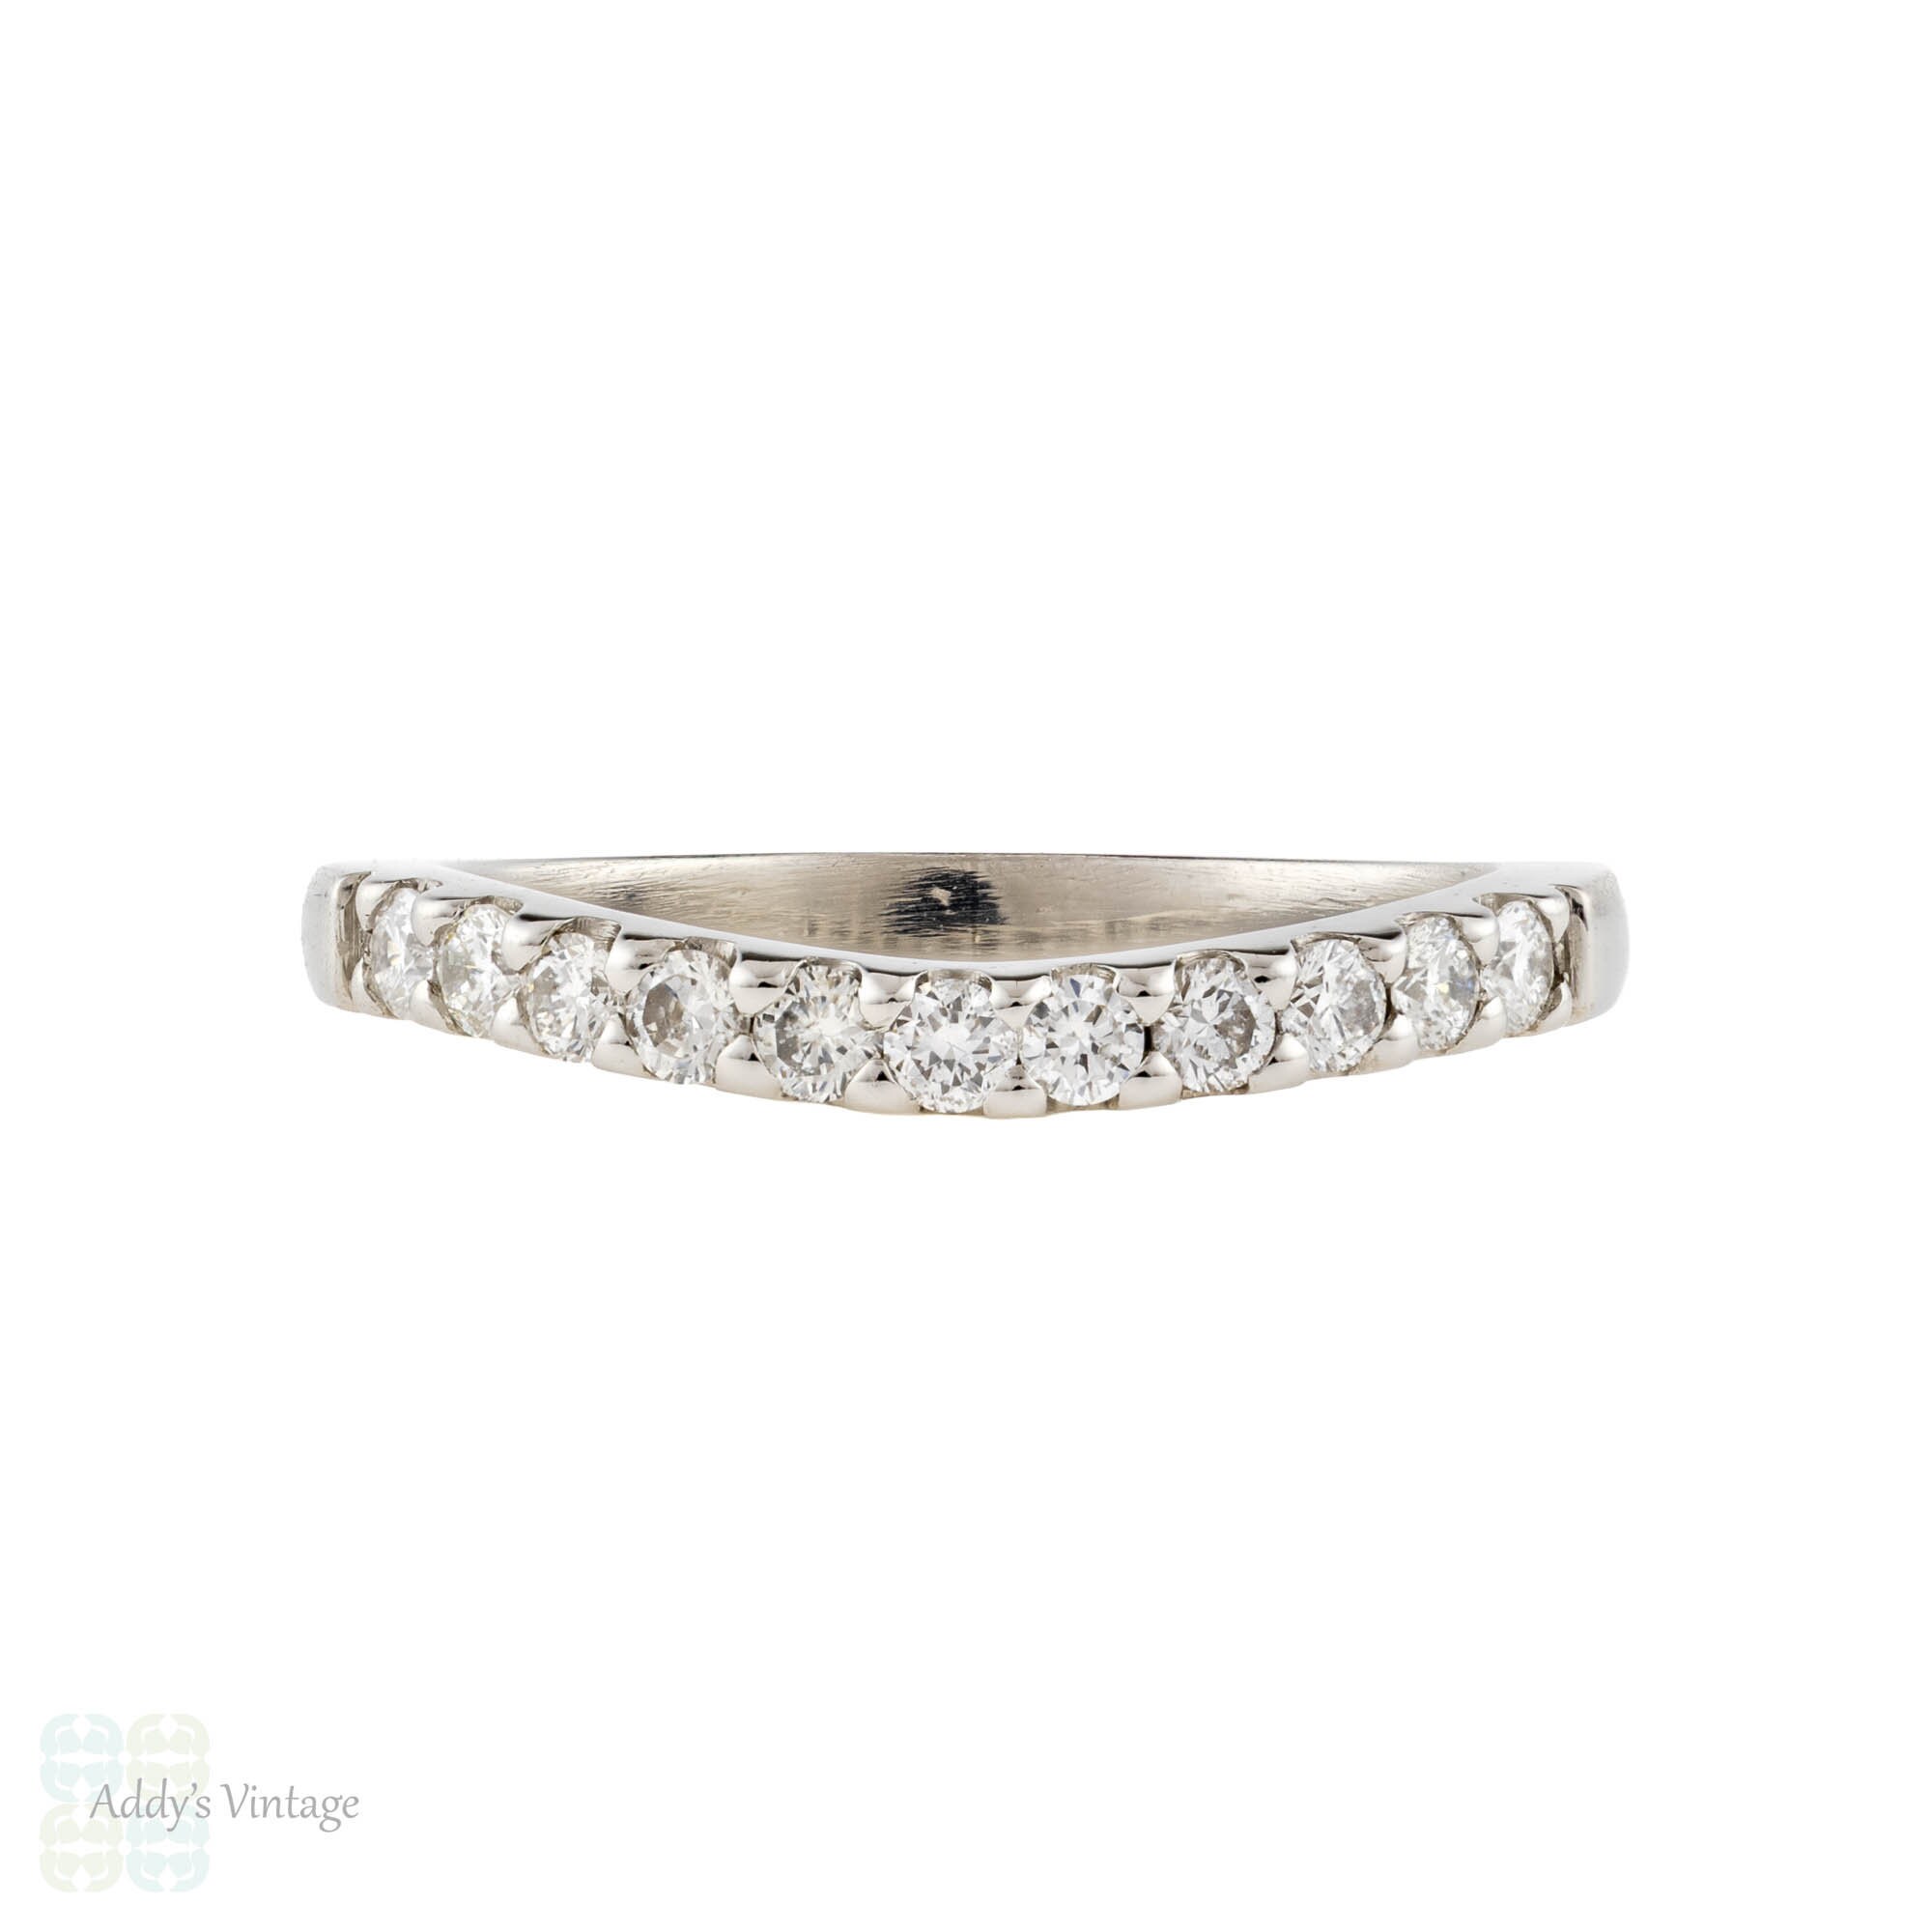 Art Deco Platinum, Baguette Cut Sapphire & Diamond Ring (995T)